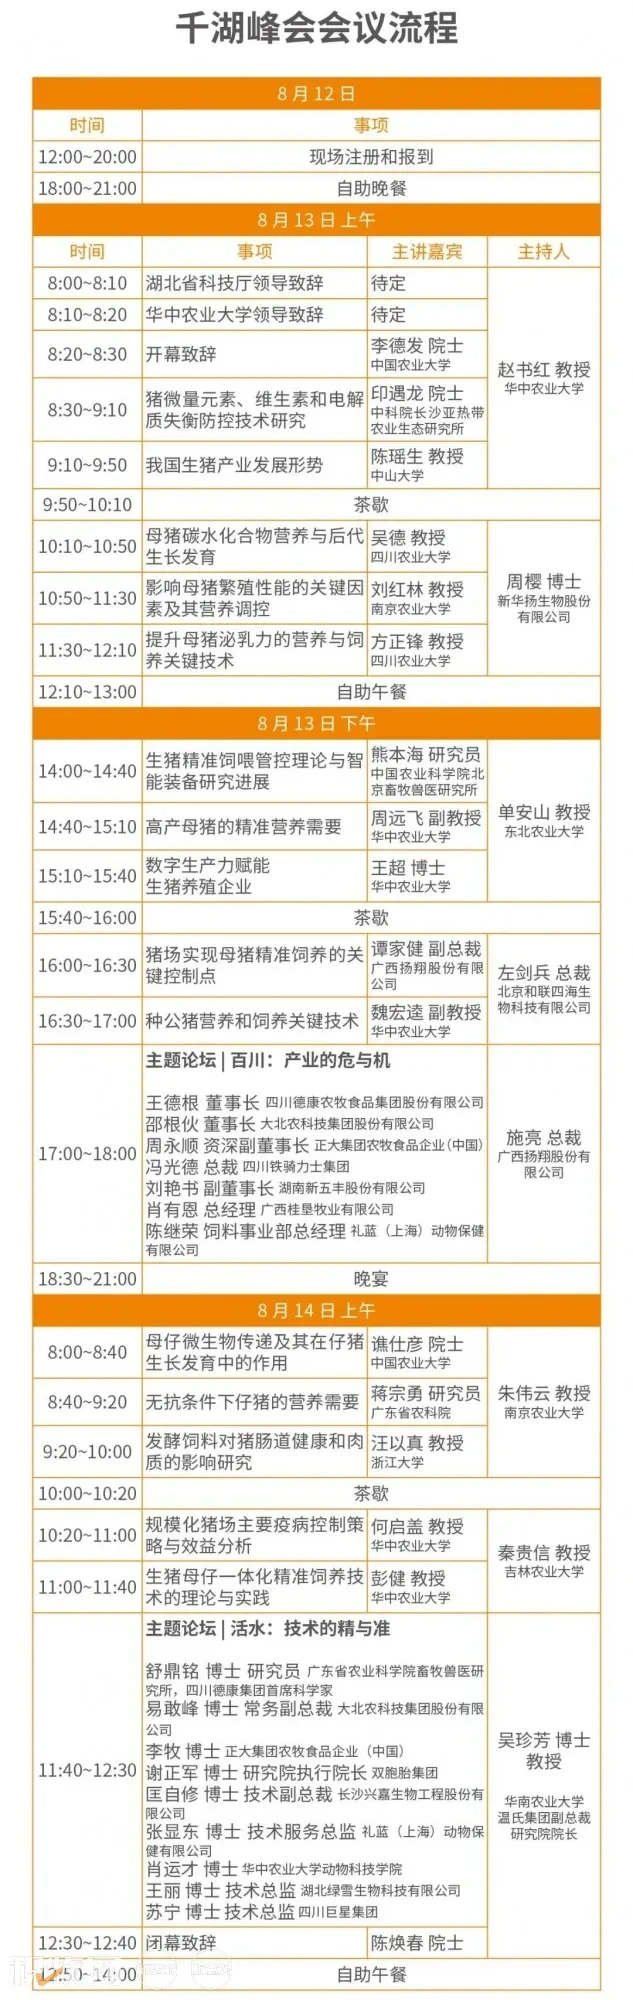 8月12-14日|千湖峰会·生猪母仔一体化精准饲养技术高峰研讨会与您武汉相聚